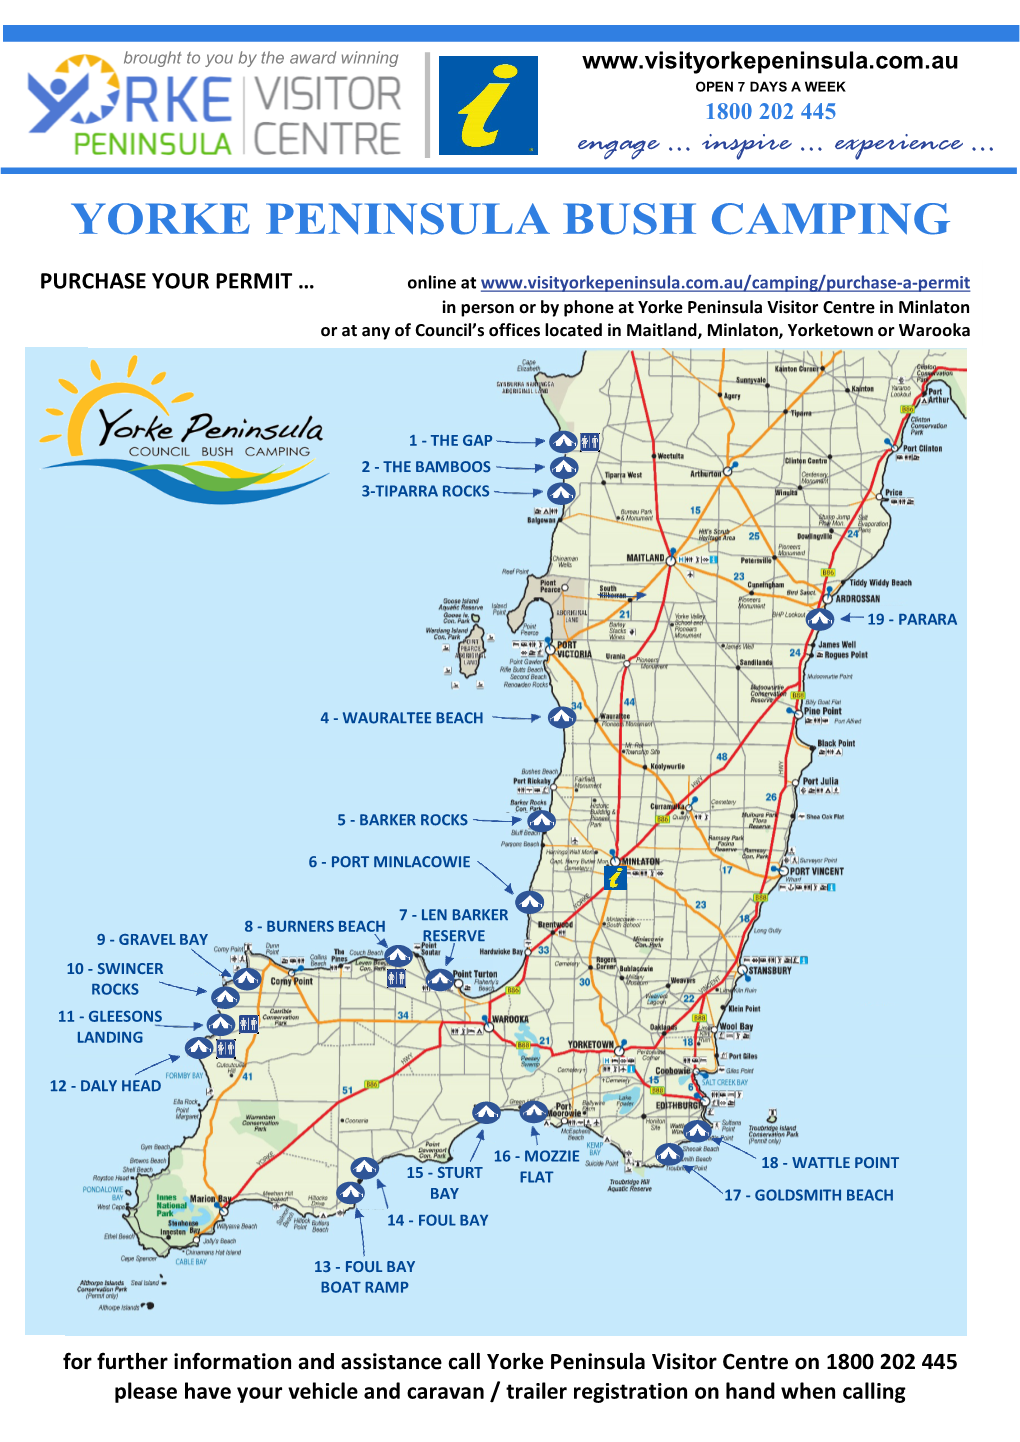 Camping on Yorke Peninsula Information Sheet